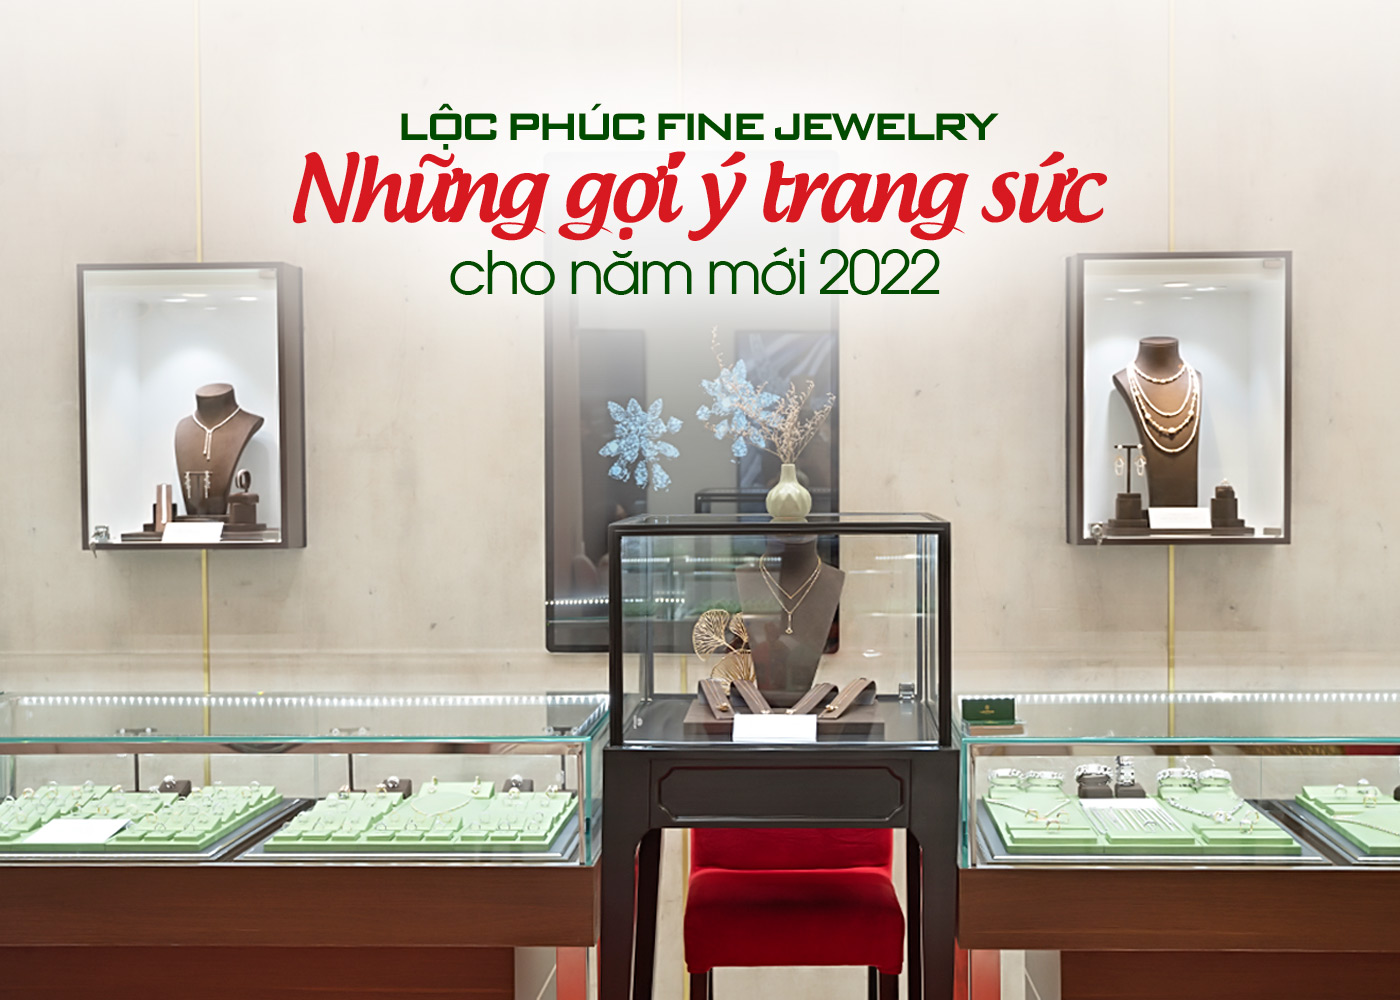 Lộc Phúc Fine Jewelry, những gợi ý trang sức cho năm mới 2022 - Ảnh 1